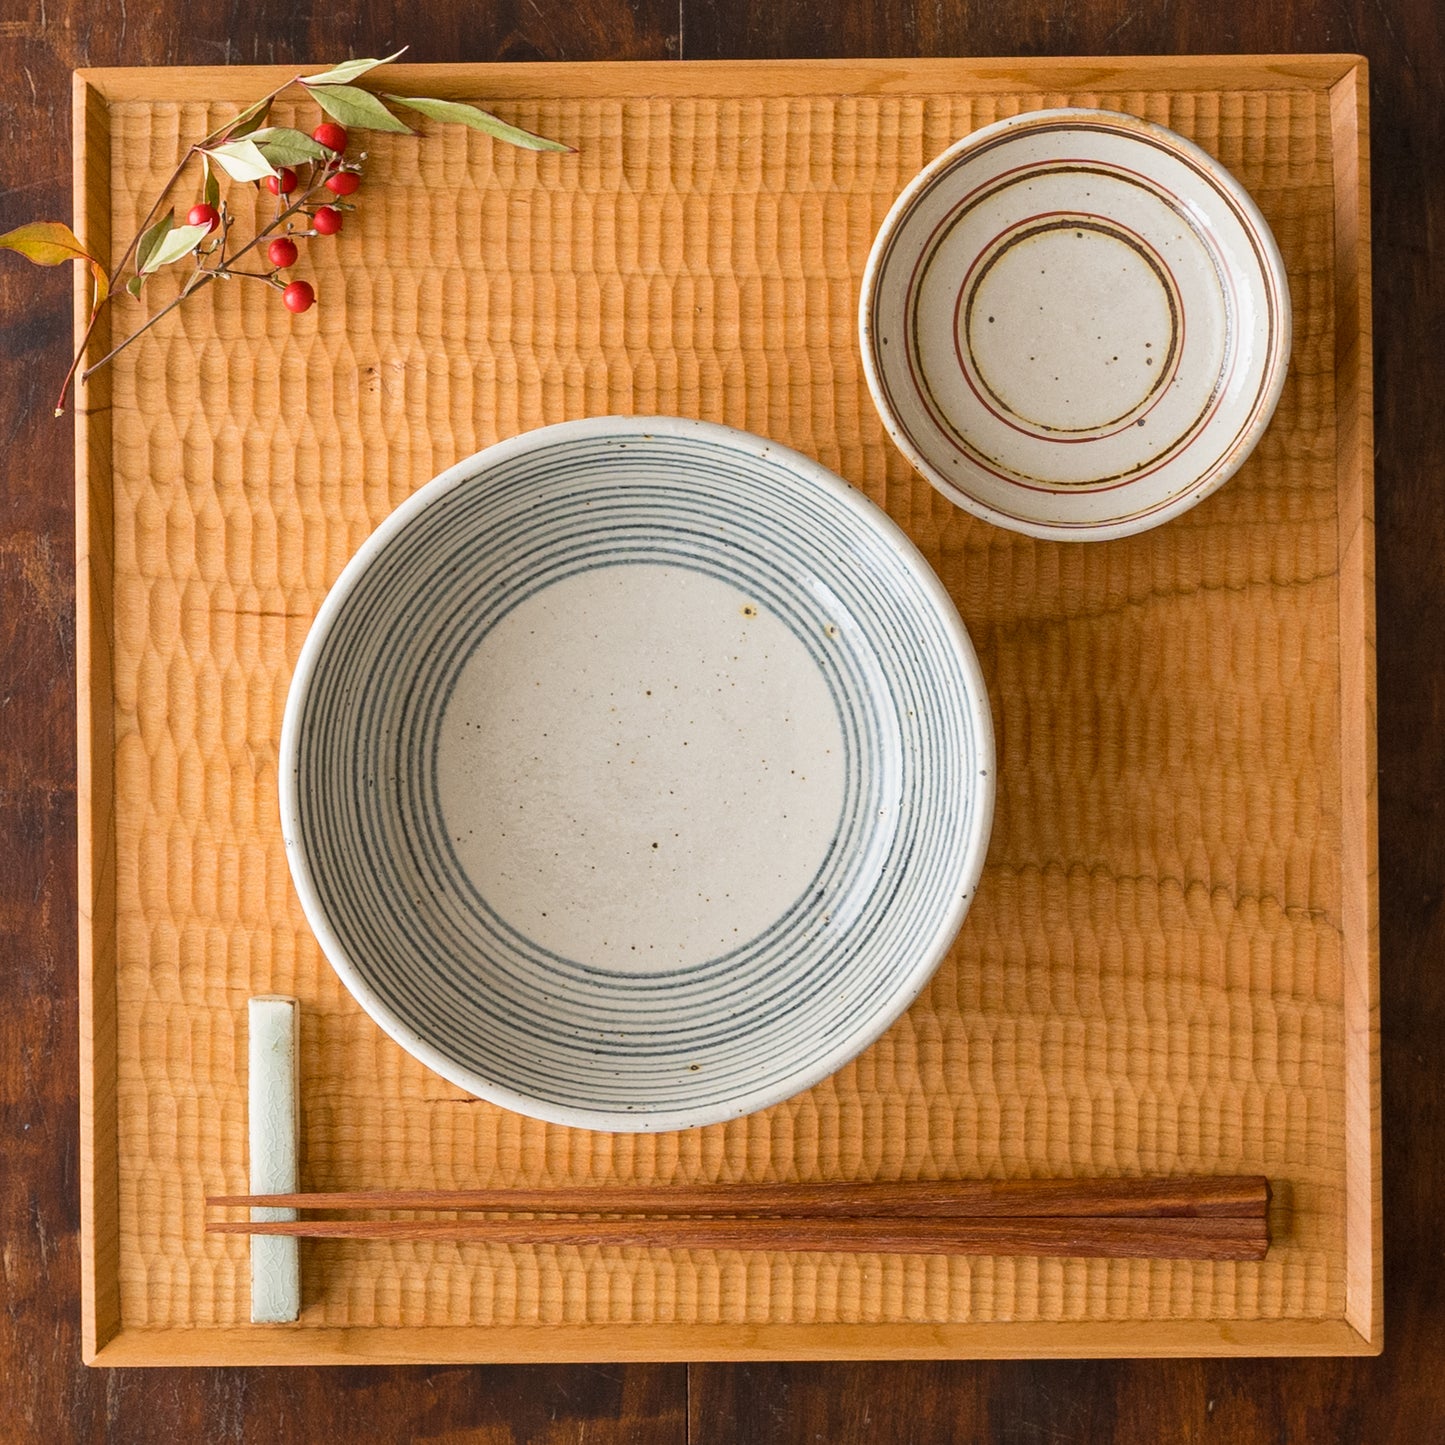 和食がもっと食べたくなる冨本大輔さんの灰釉染付5寸鉢と鉄絵3寸皿